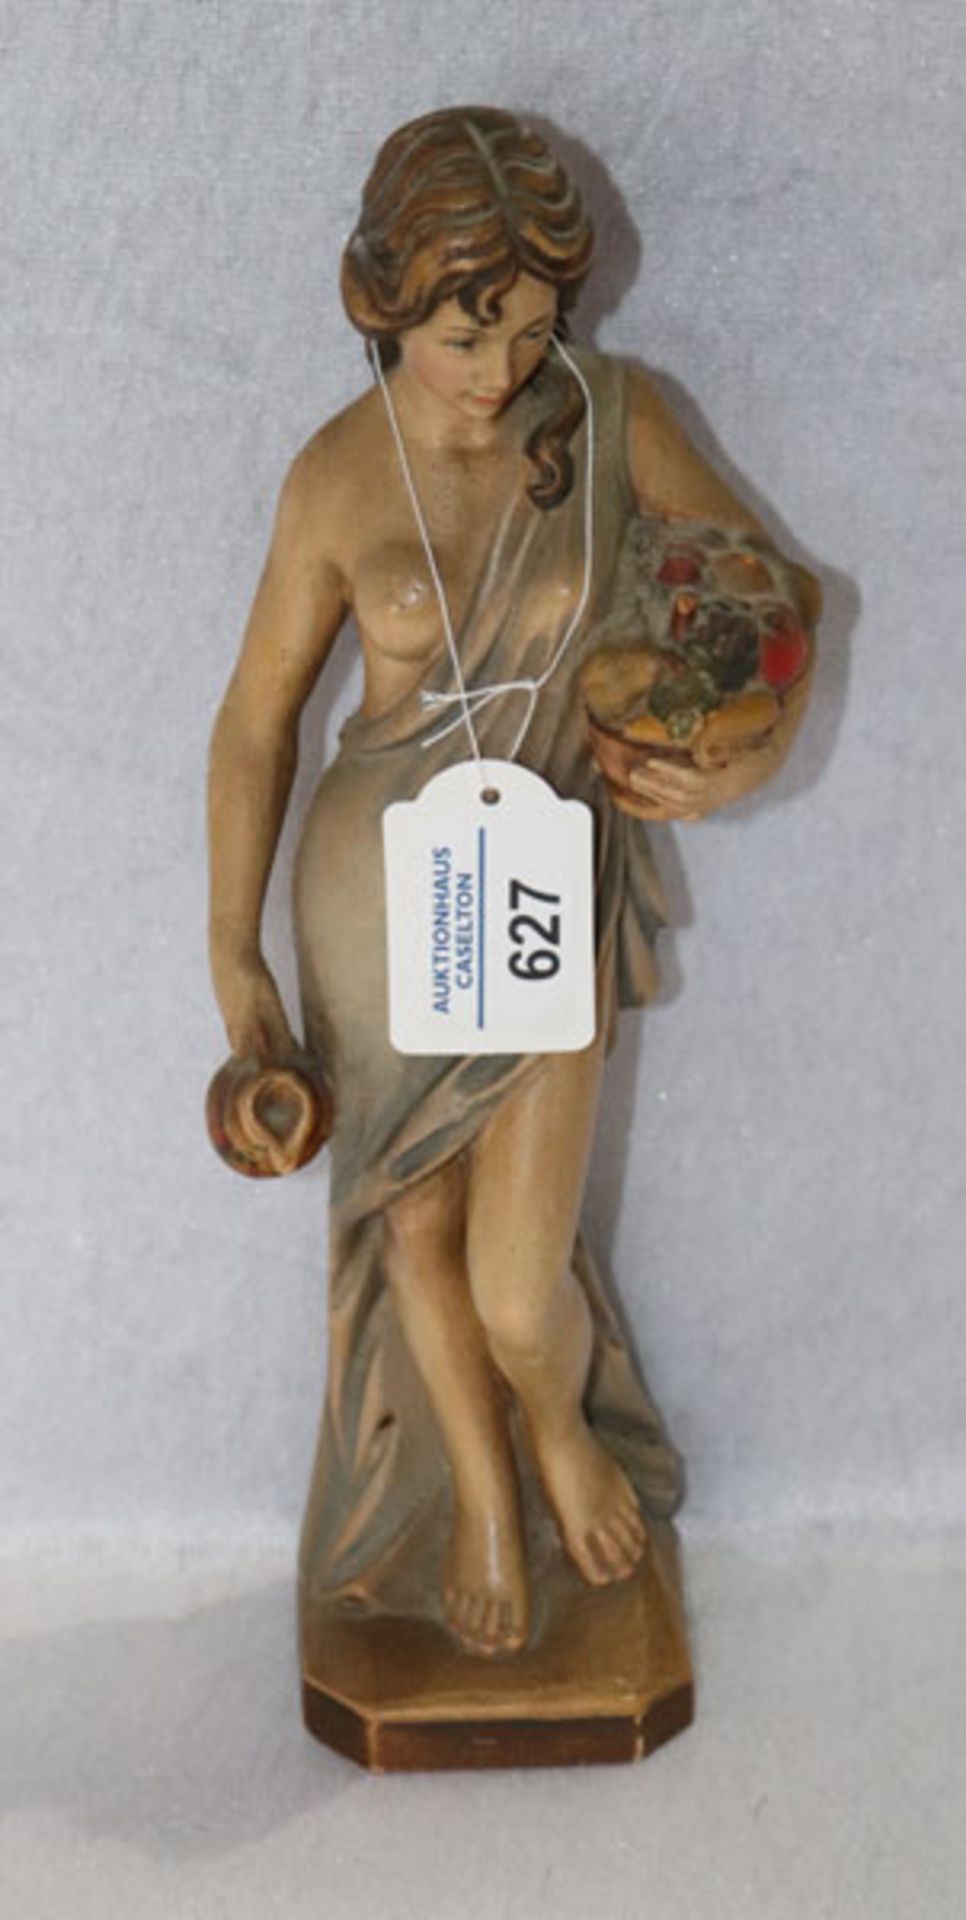 Holz Figurenskulptur 'Frau mit Obstkorb und Kanne', farbig gefaßt, H 29 cm, leicht berieben